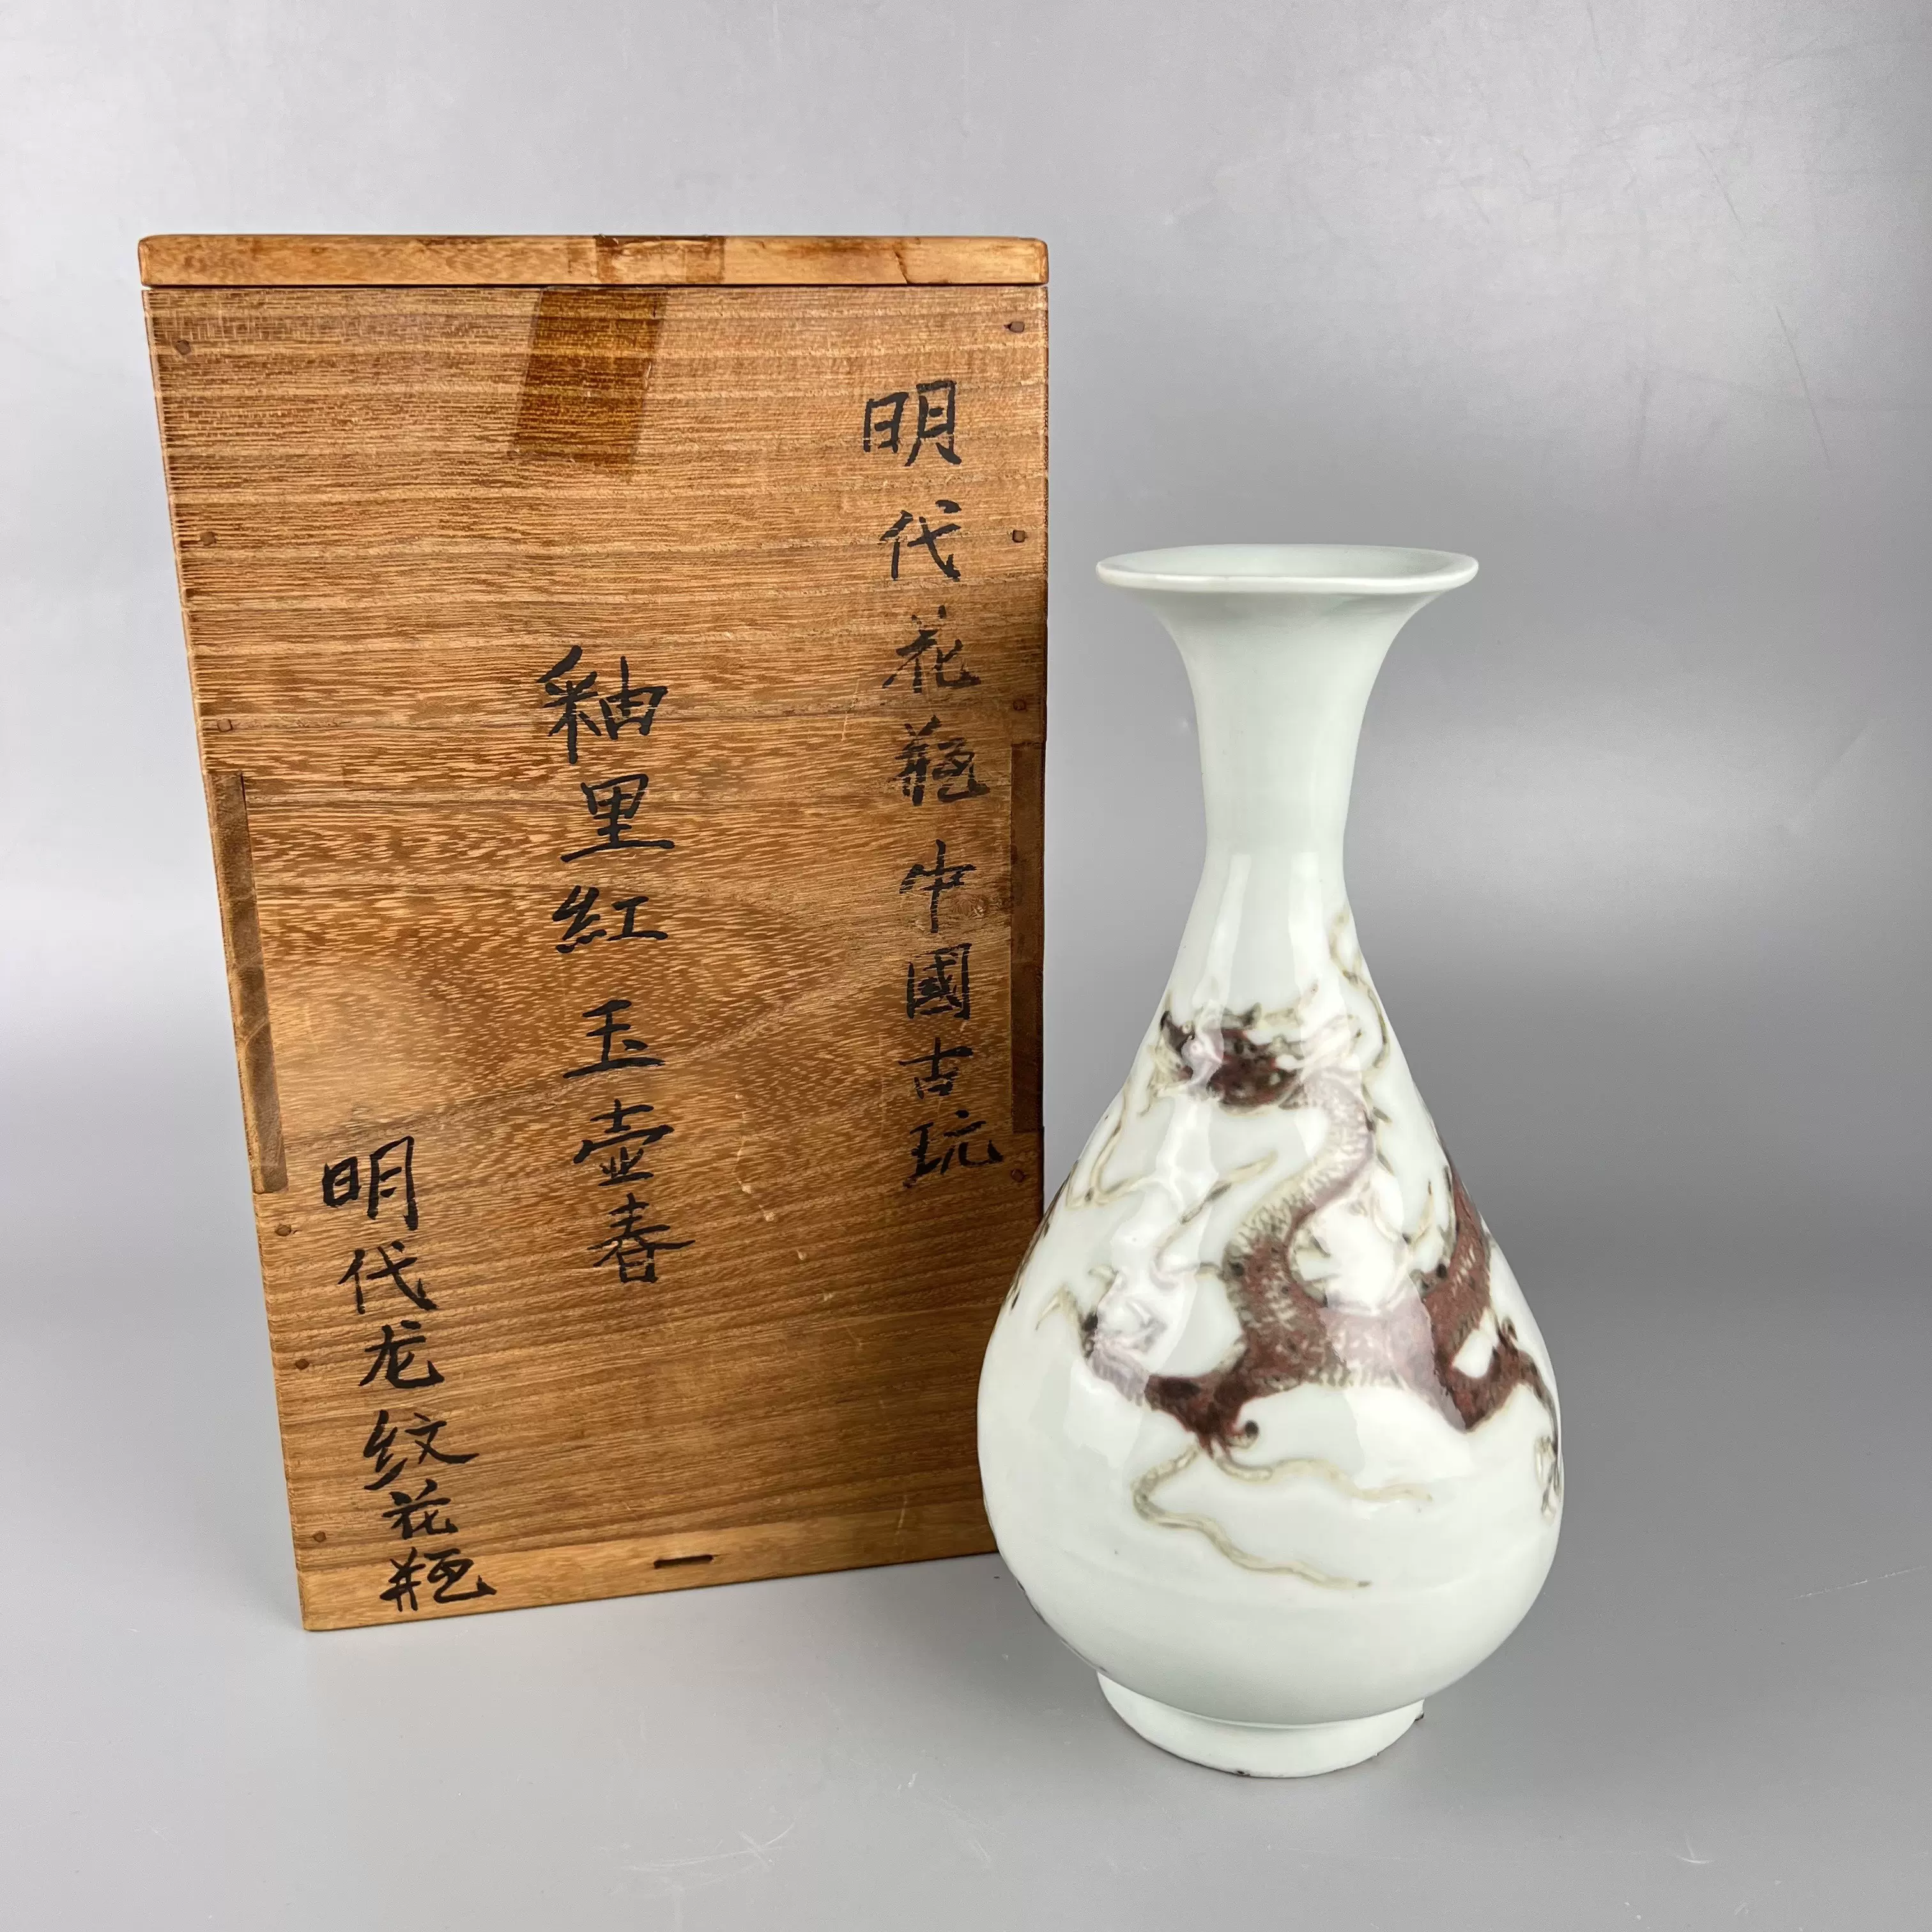 日本回流明代中国古玩釉里红龙纹玉壶春瓶花瓶文玩古董收藏摆件-Taobao